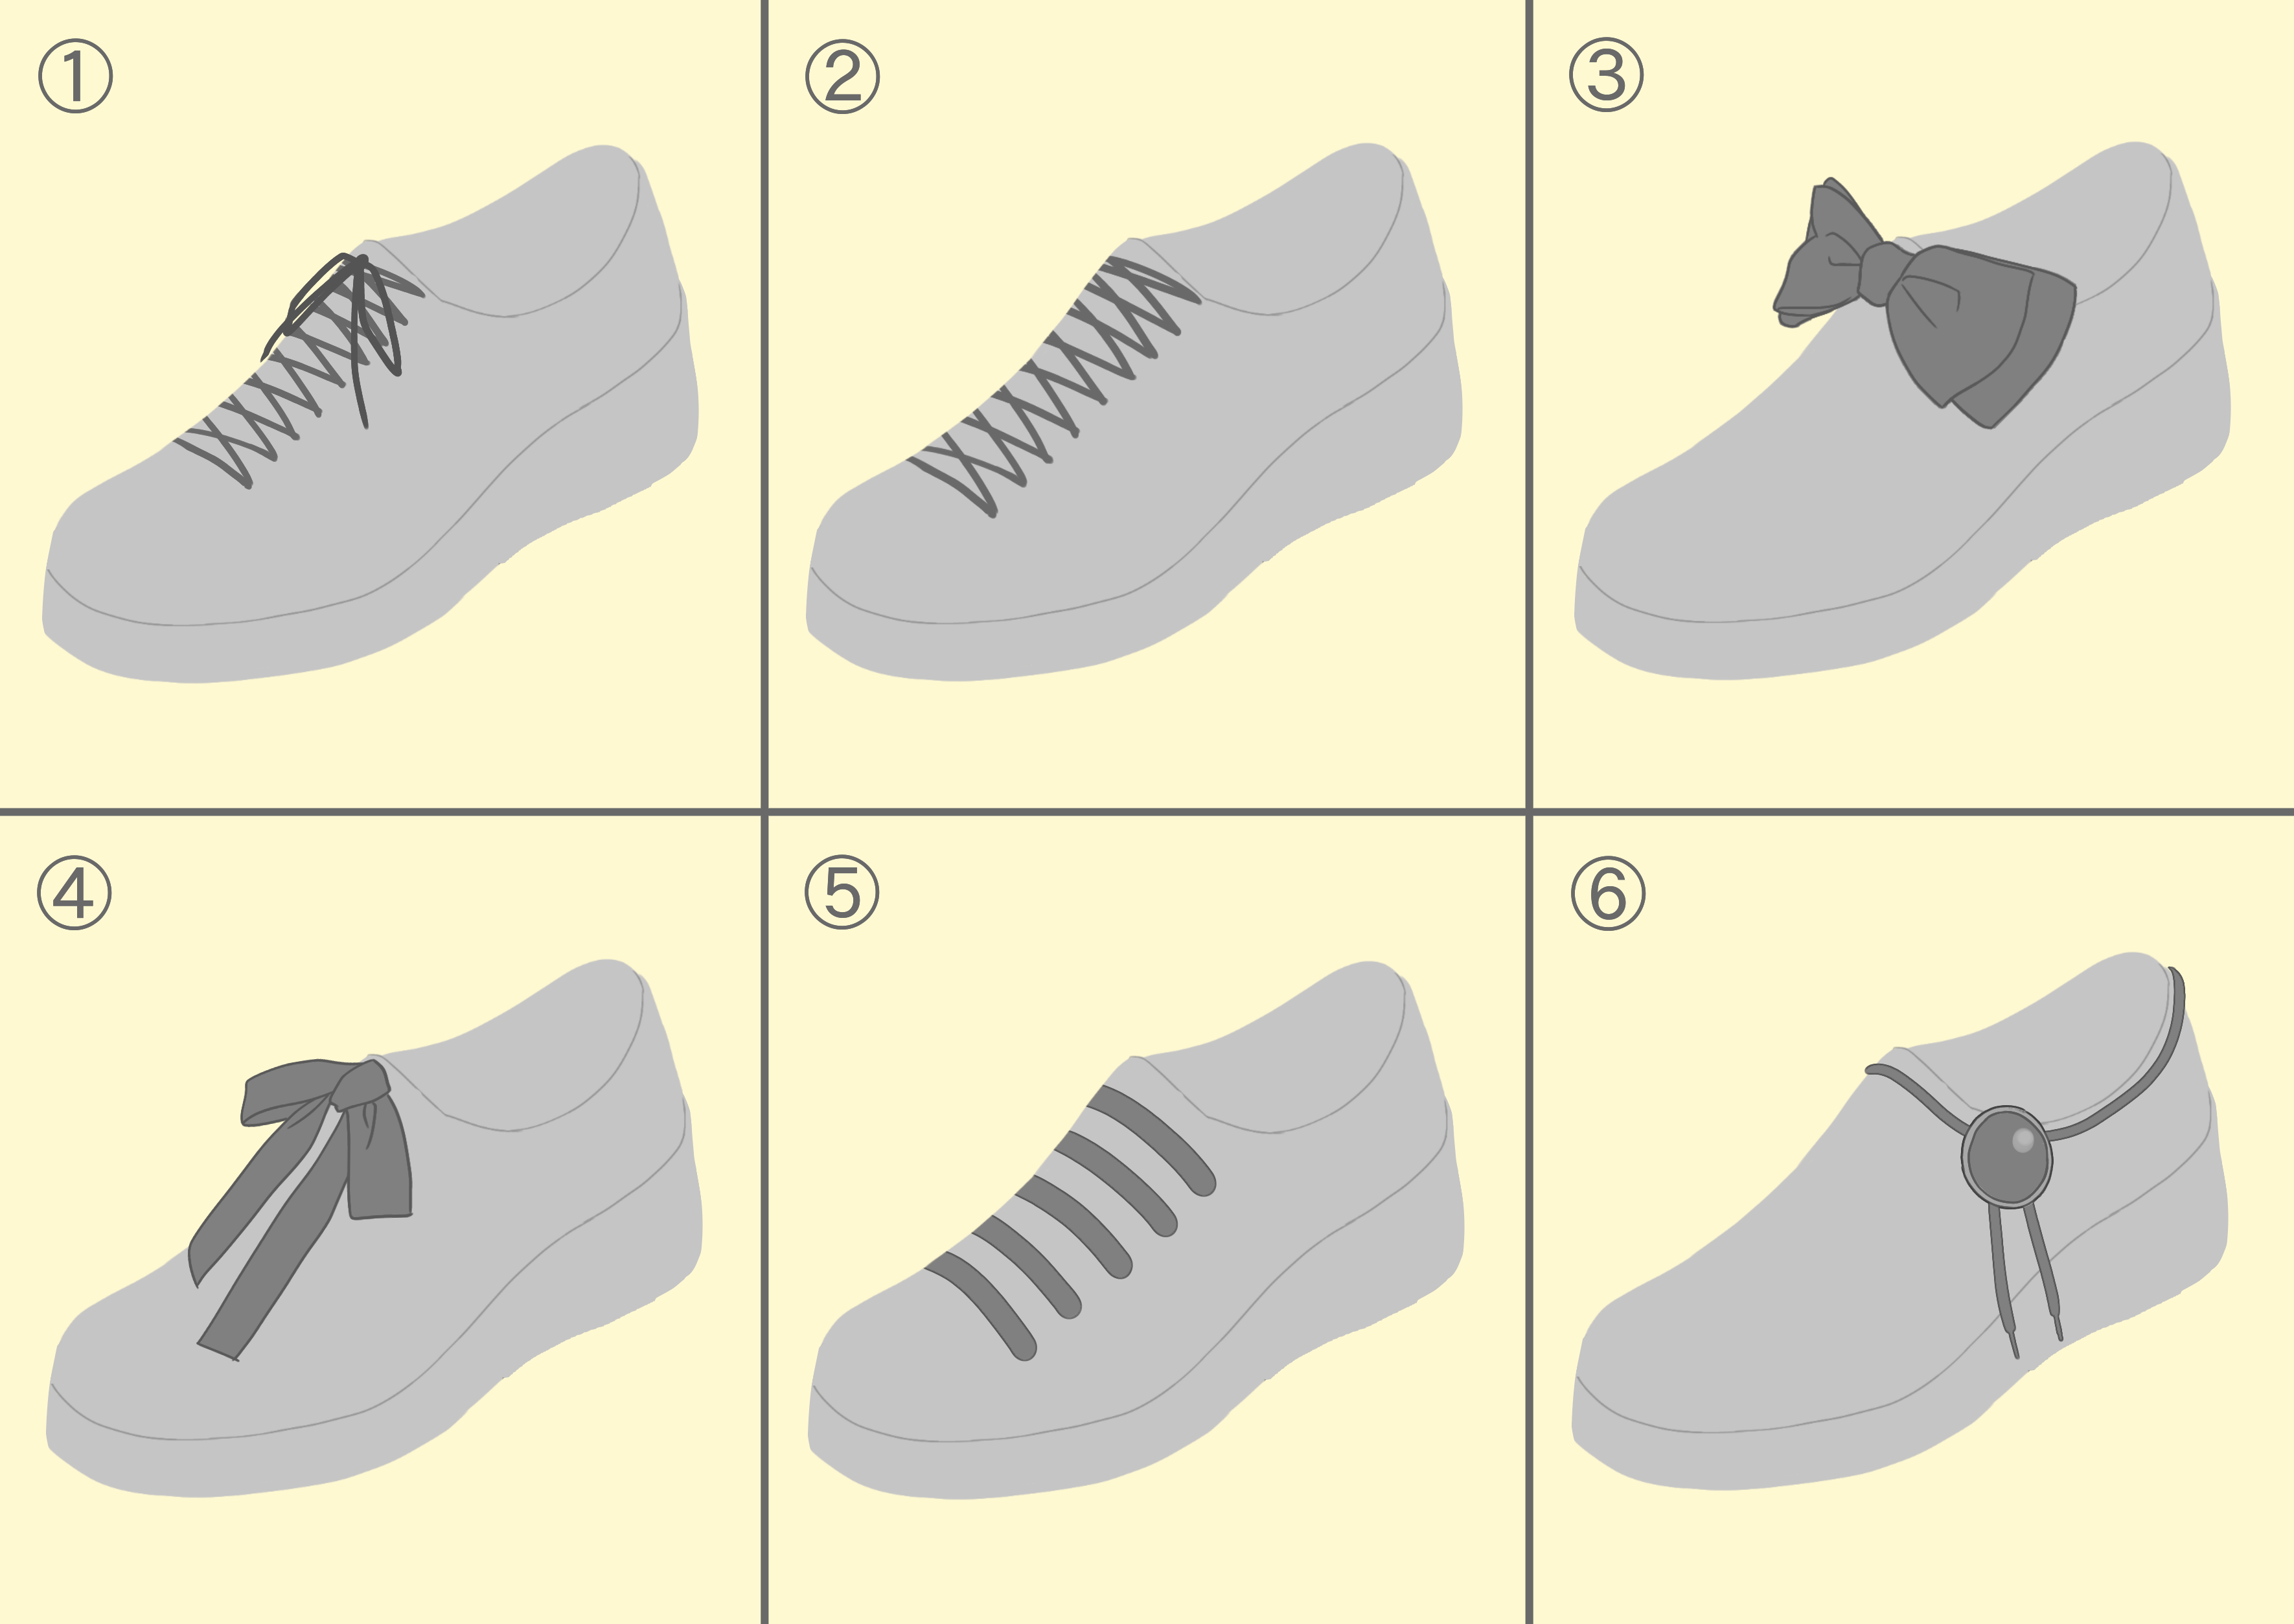 オリジナルの靴を描こう Medibang Paint 無料のイラスト マンガ制作ツール